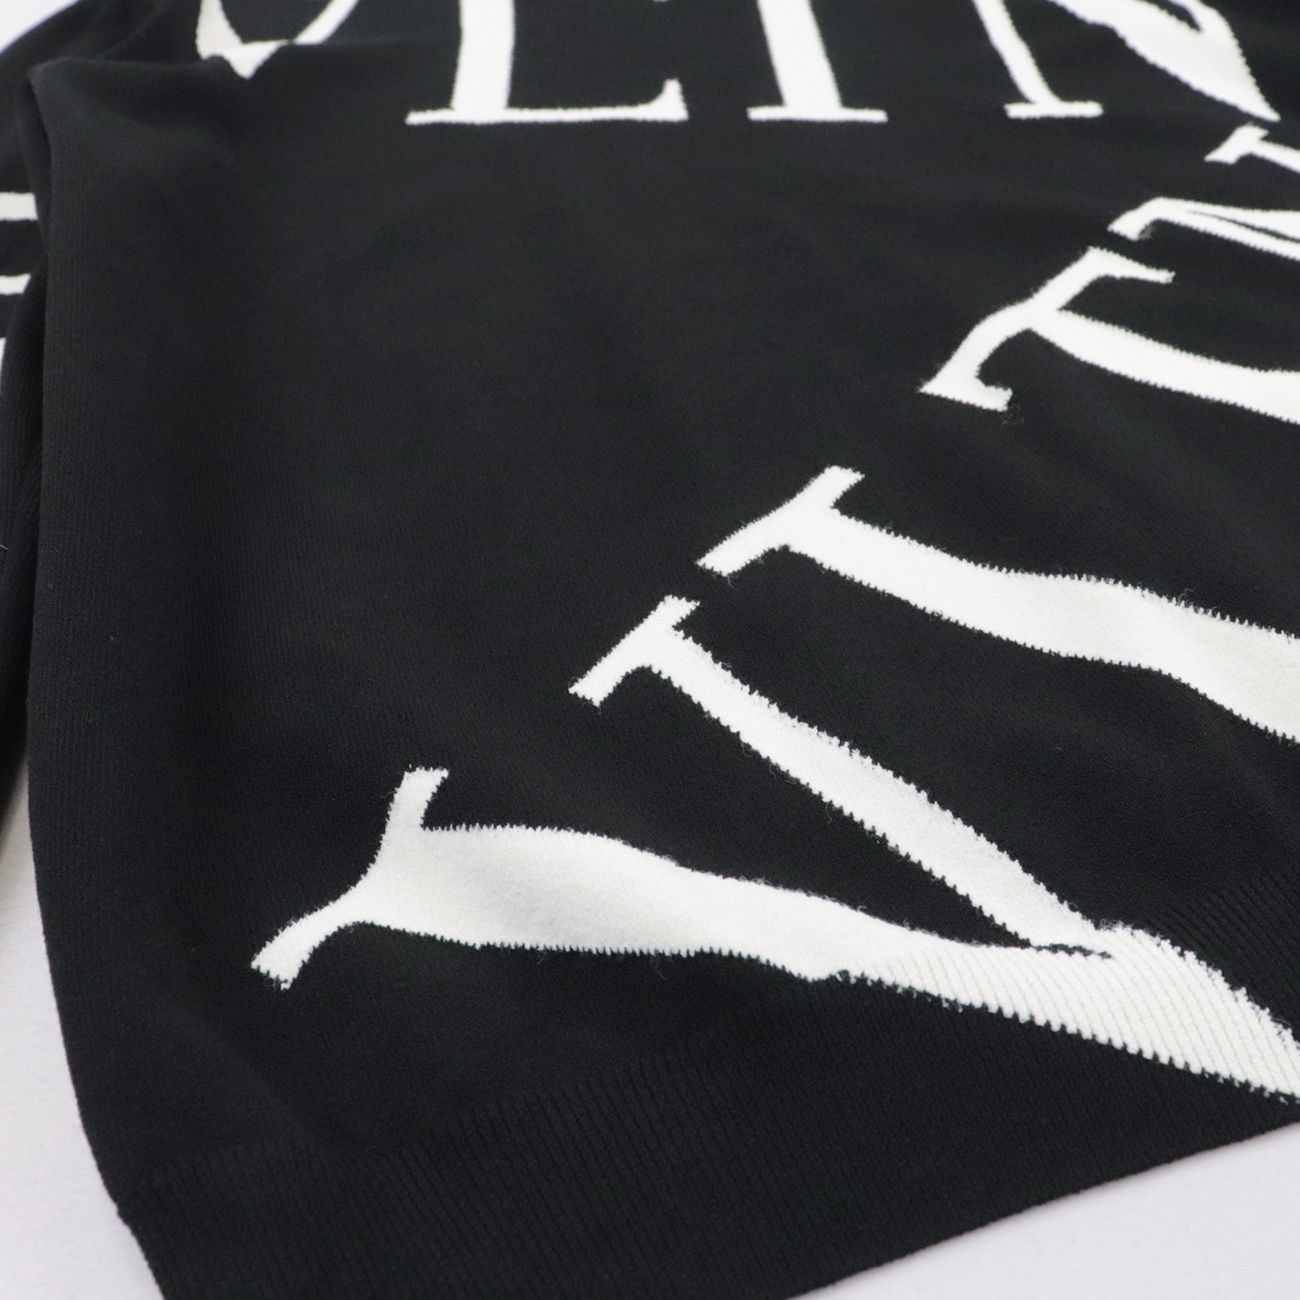 ヴァレンティノ VLTNロゴ ニット セーター メンズ 黒 白 M - オパール